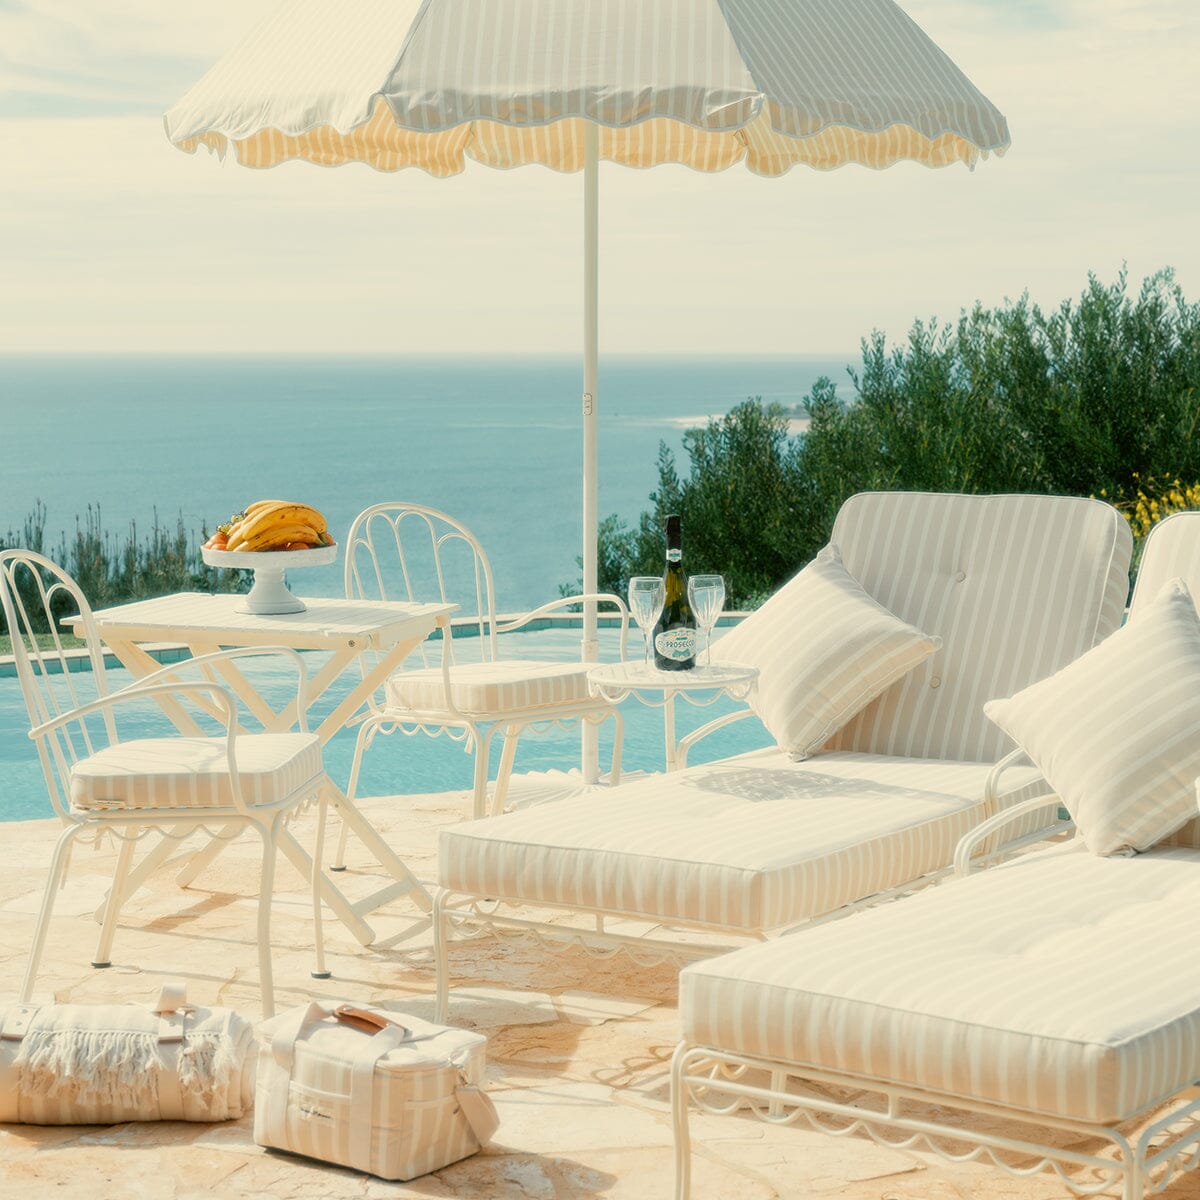 The Al Fresco Chair Cushion - Monaco Natural Stripe Al Fresco Chair Cushion Business & Pleasure Co Aus 